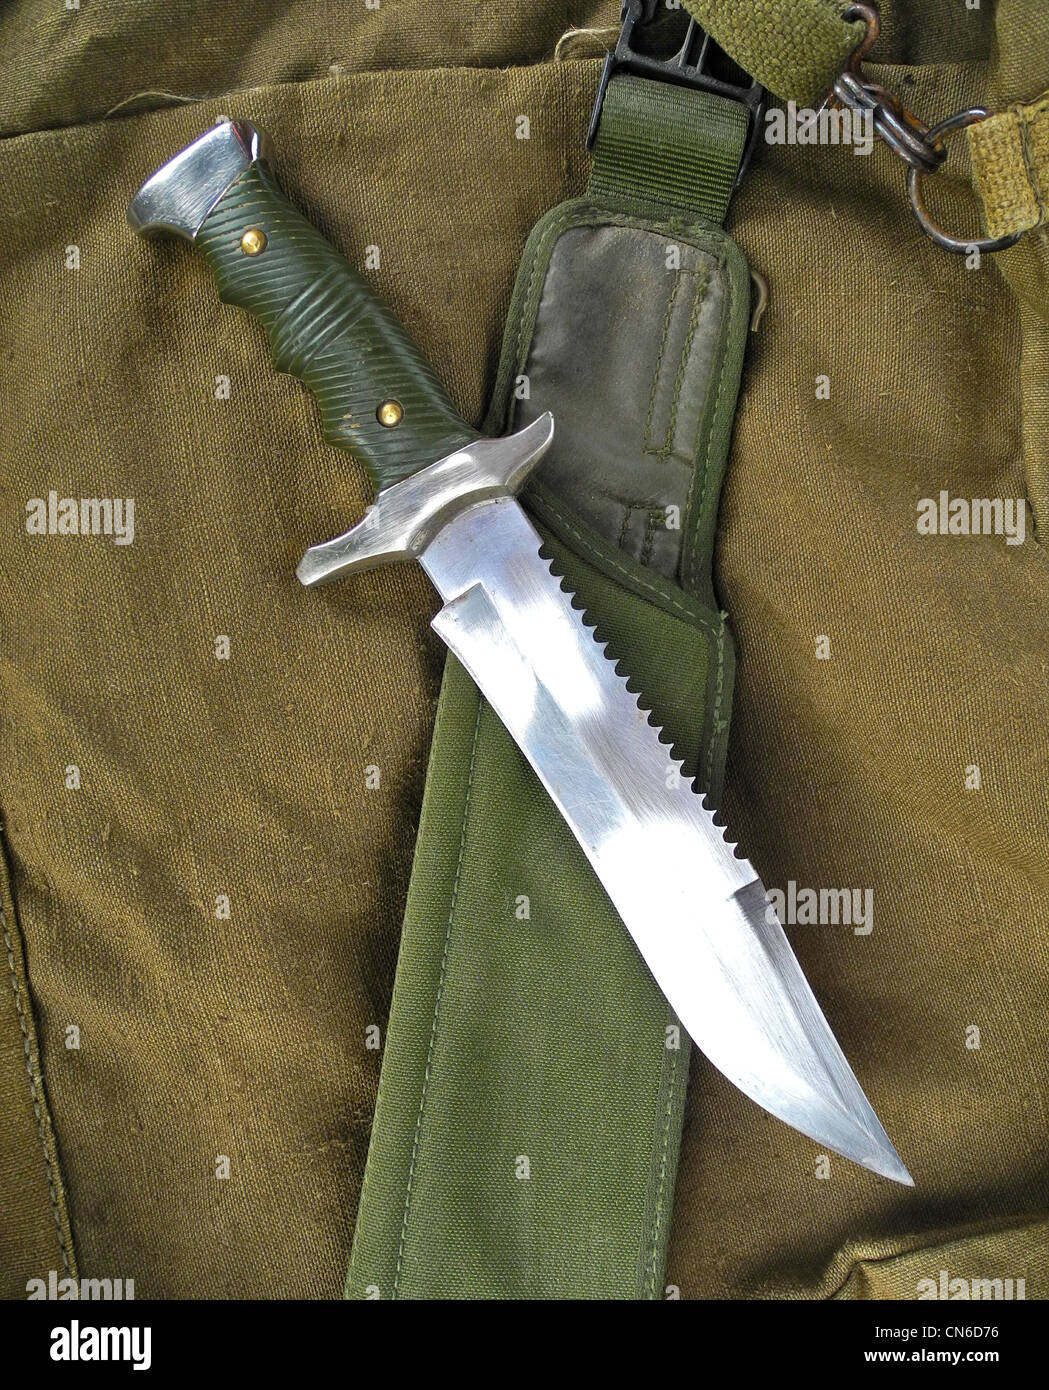 Eine militärische Kampfmesser als Waffe im Nahkampf eingesetzt. Stockfoto